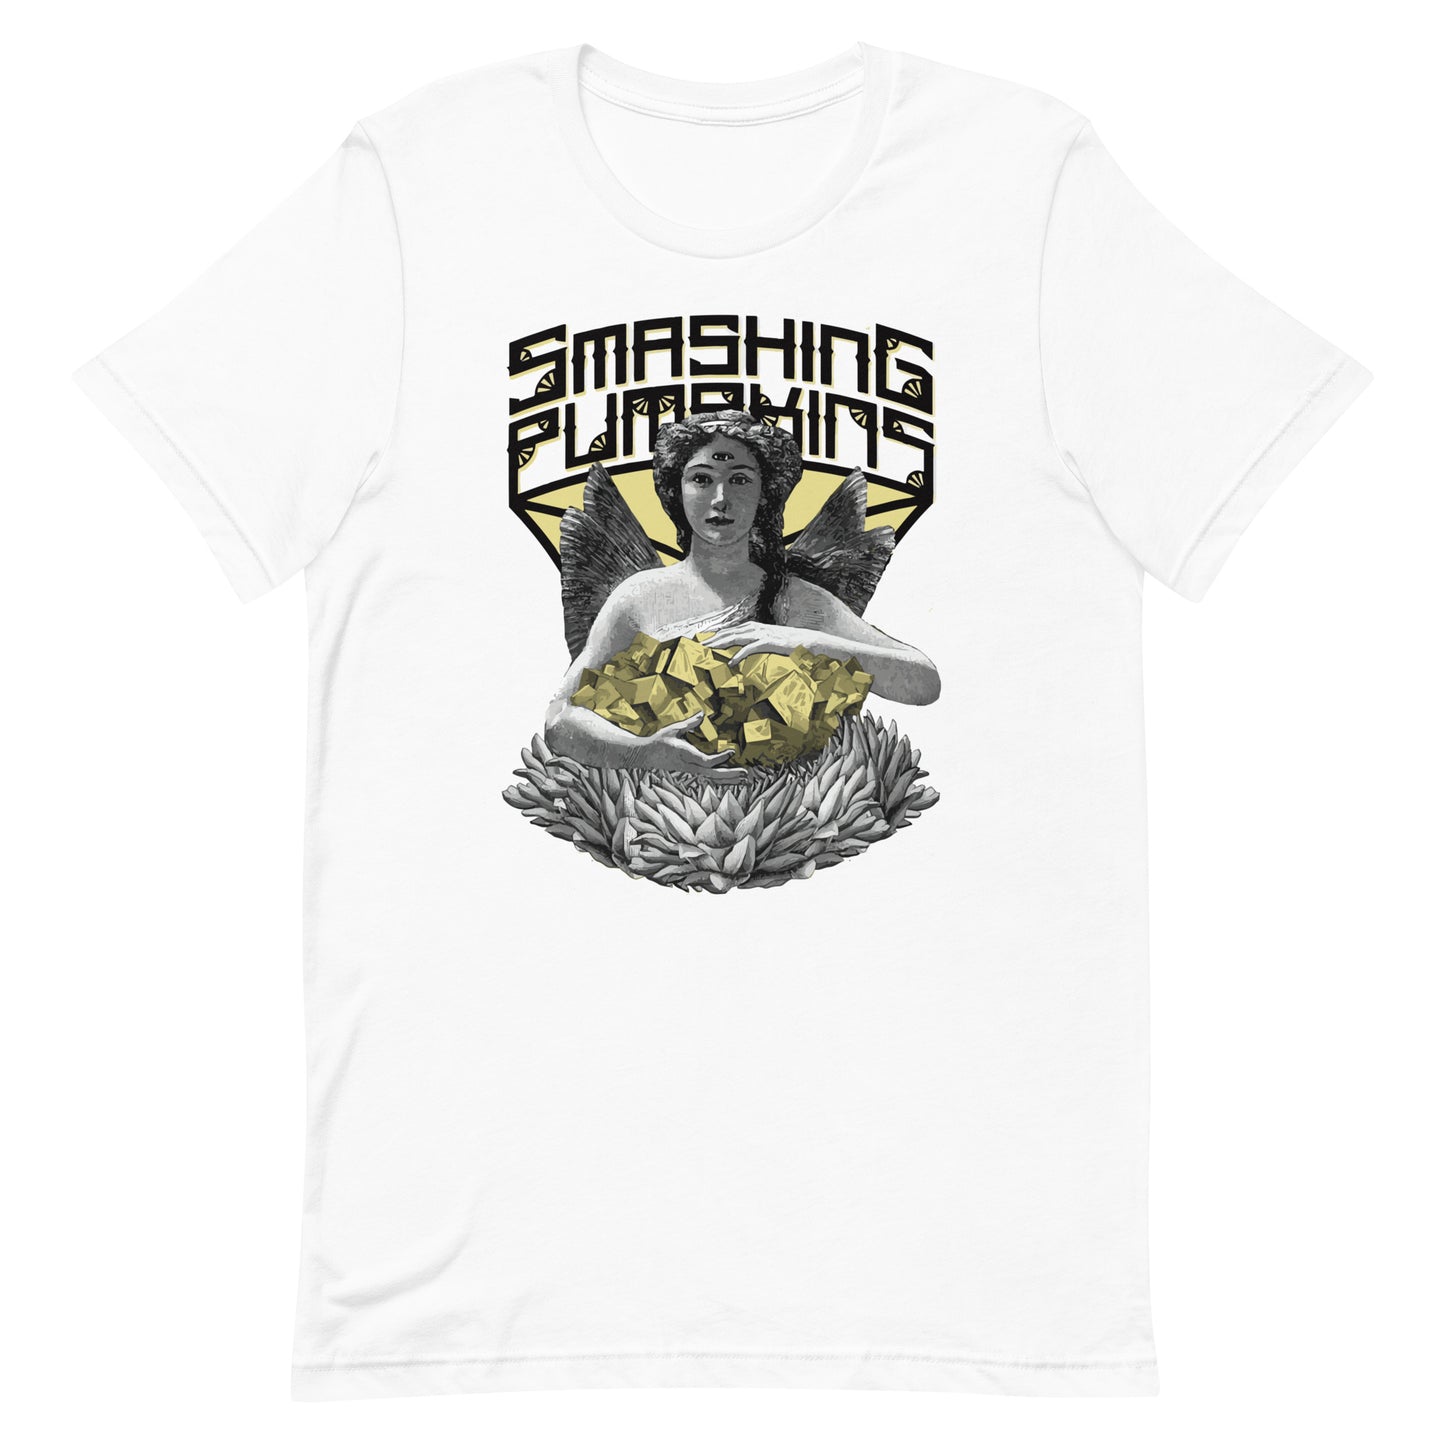 Camiseta Smashing Pumpkins angel, nuestras opciones de playeras son Unisex. disponible en Superstar. Compra y envíos internacionales.